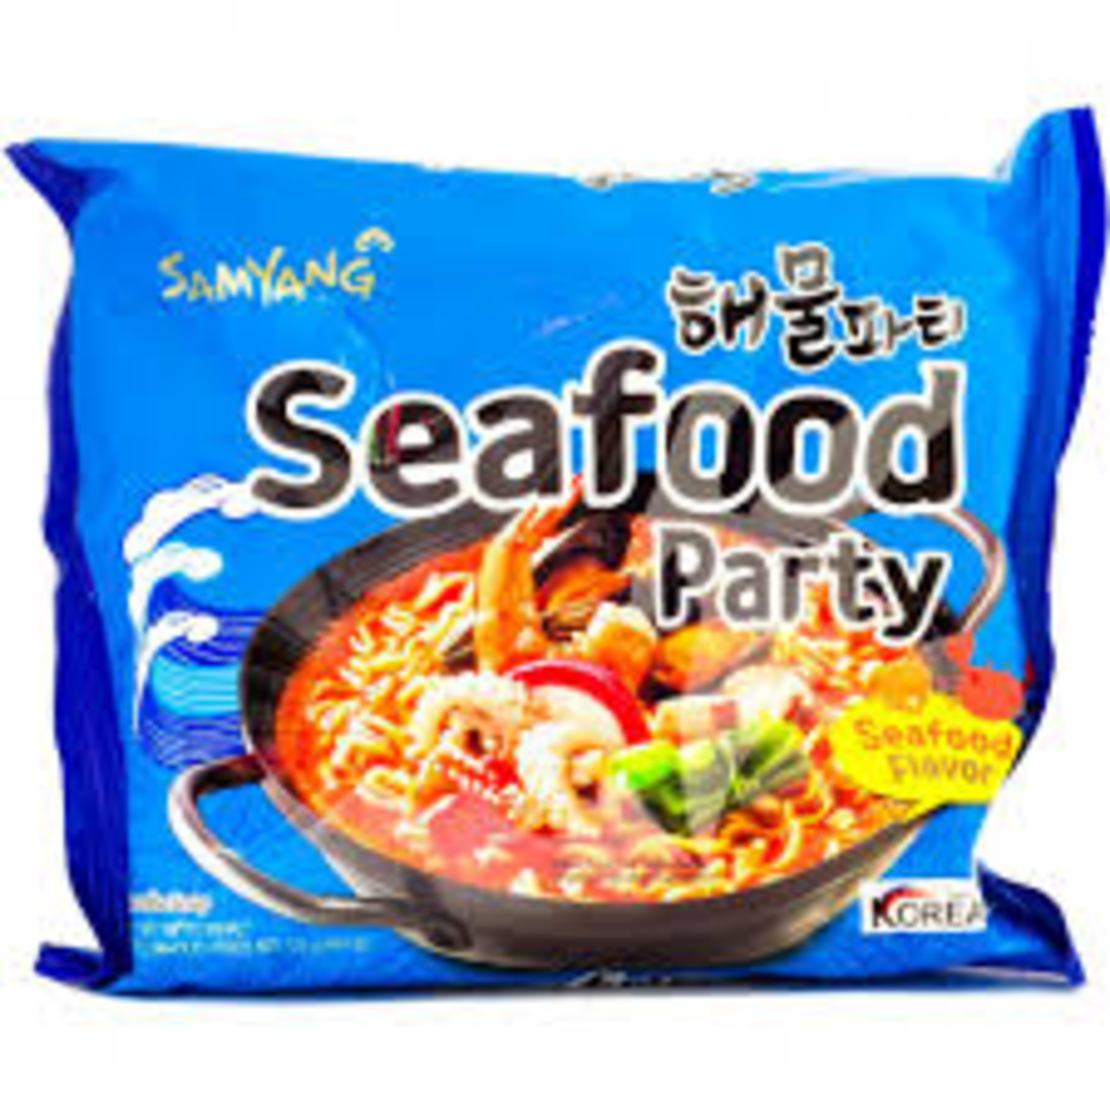 Samyang - Seafood Party 125g